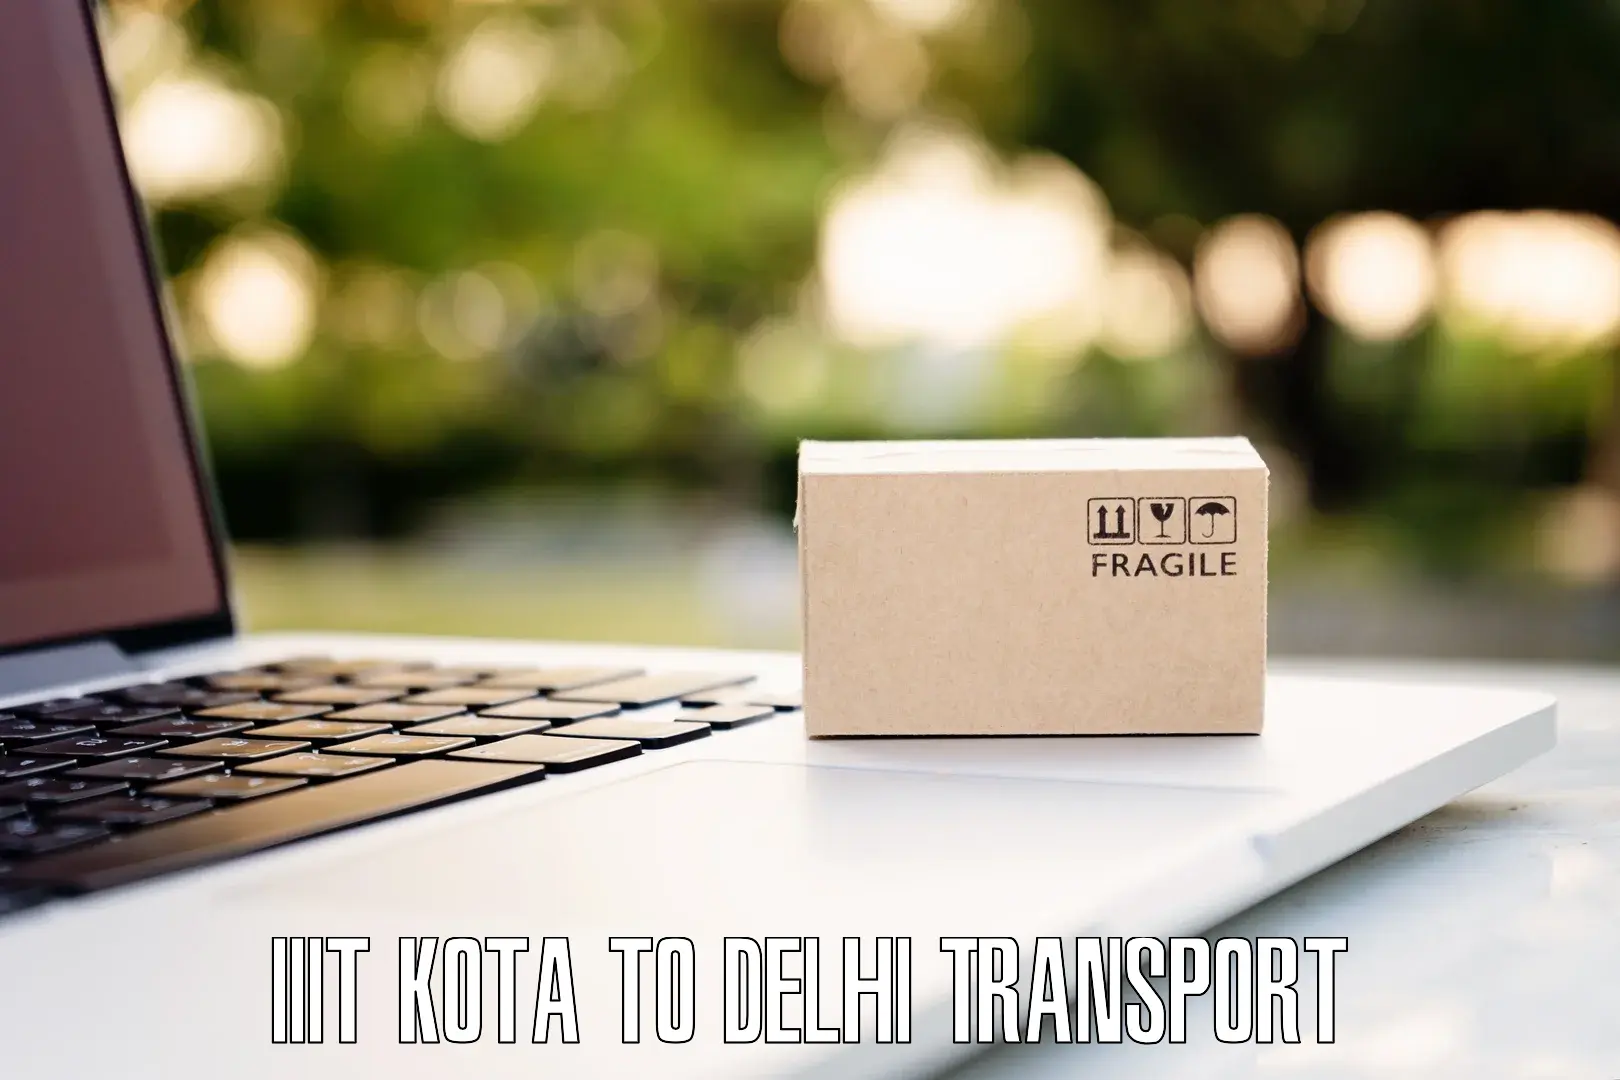 Vehicle parcel service IIIT Kota to Delhi